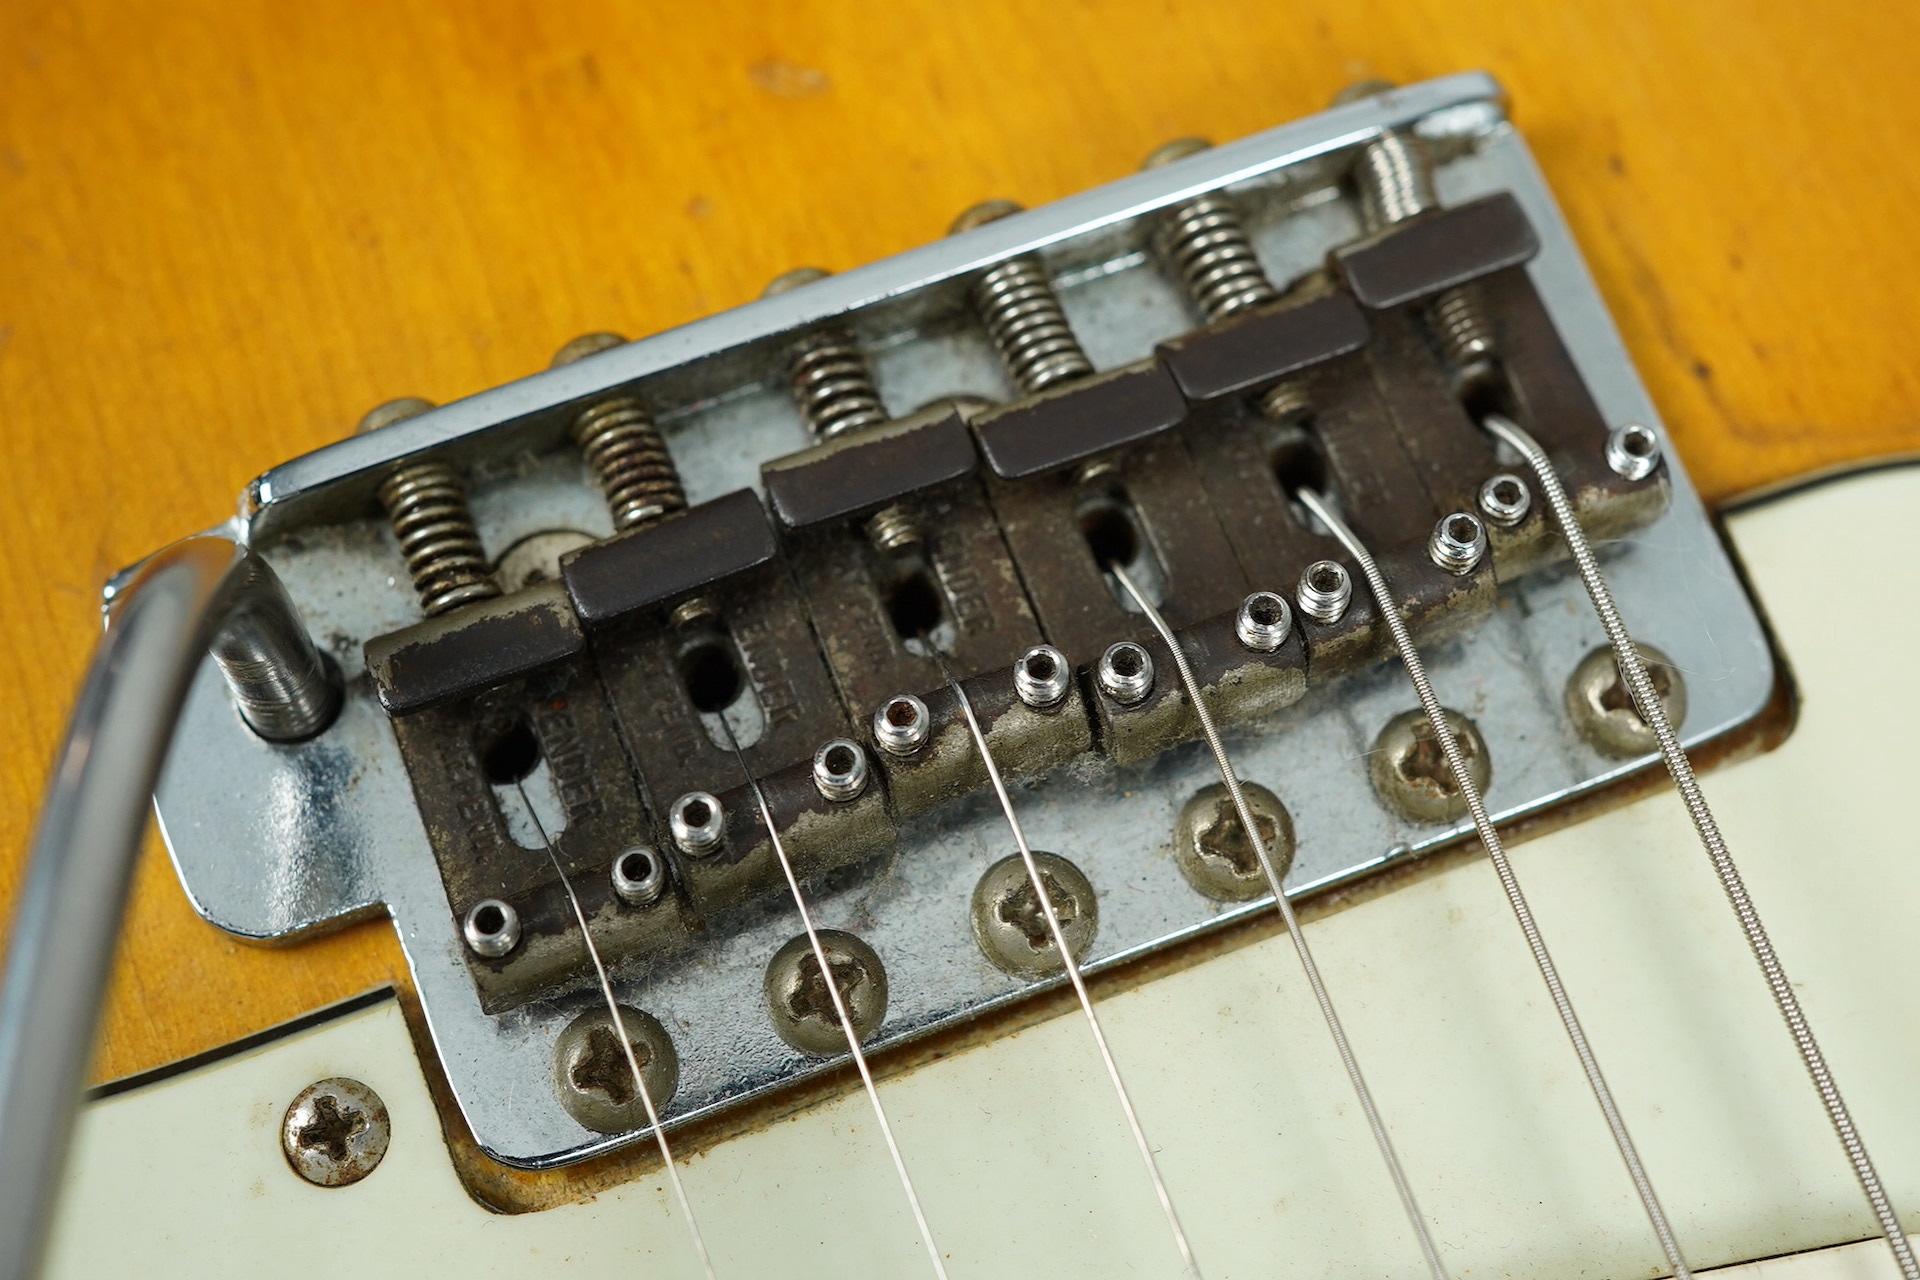 1960 Fender Stratocaster